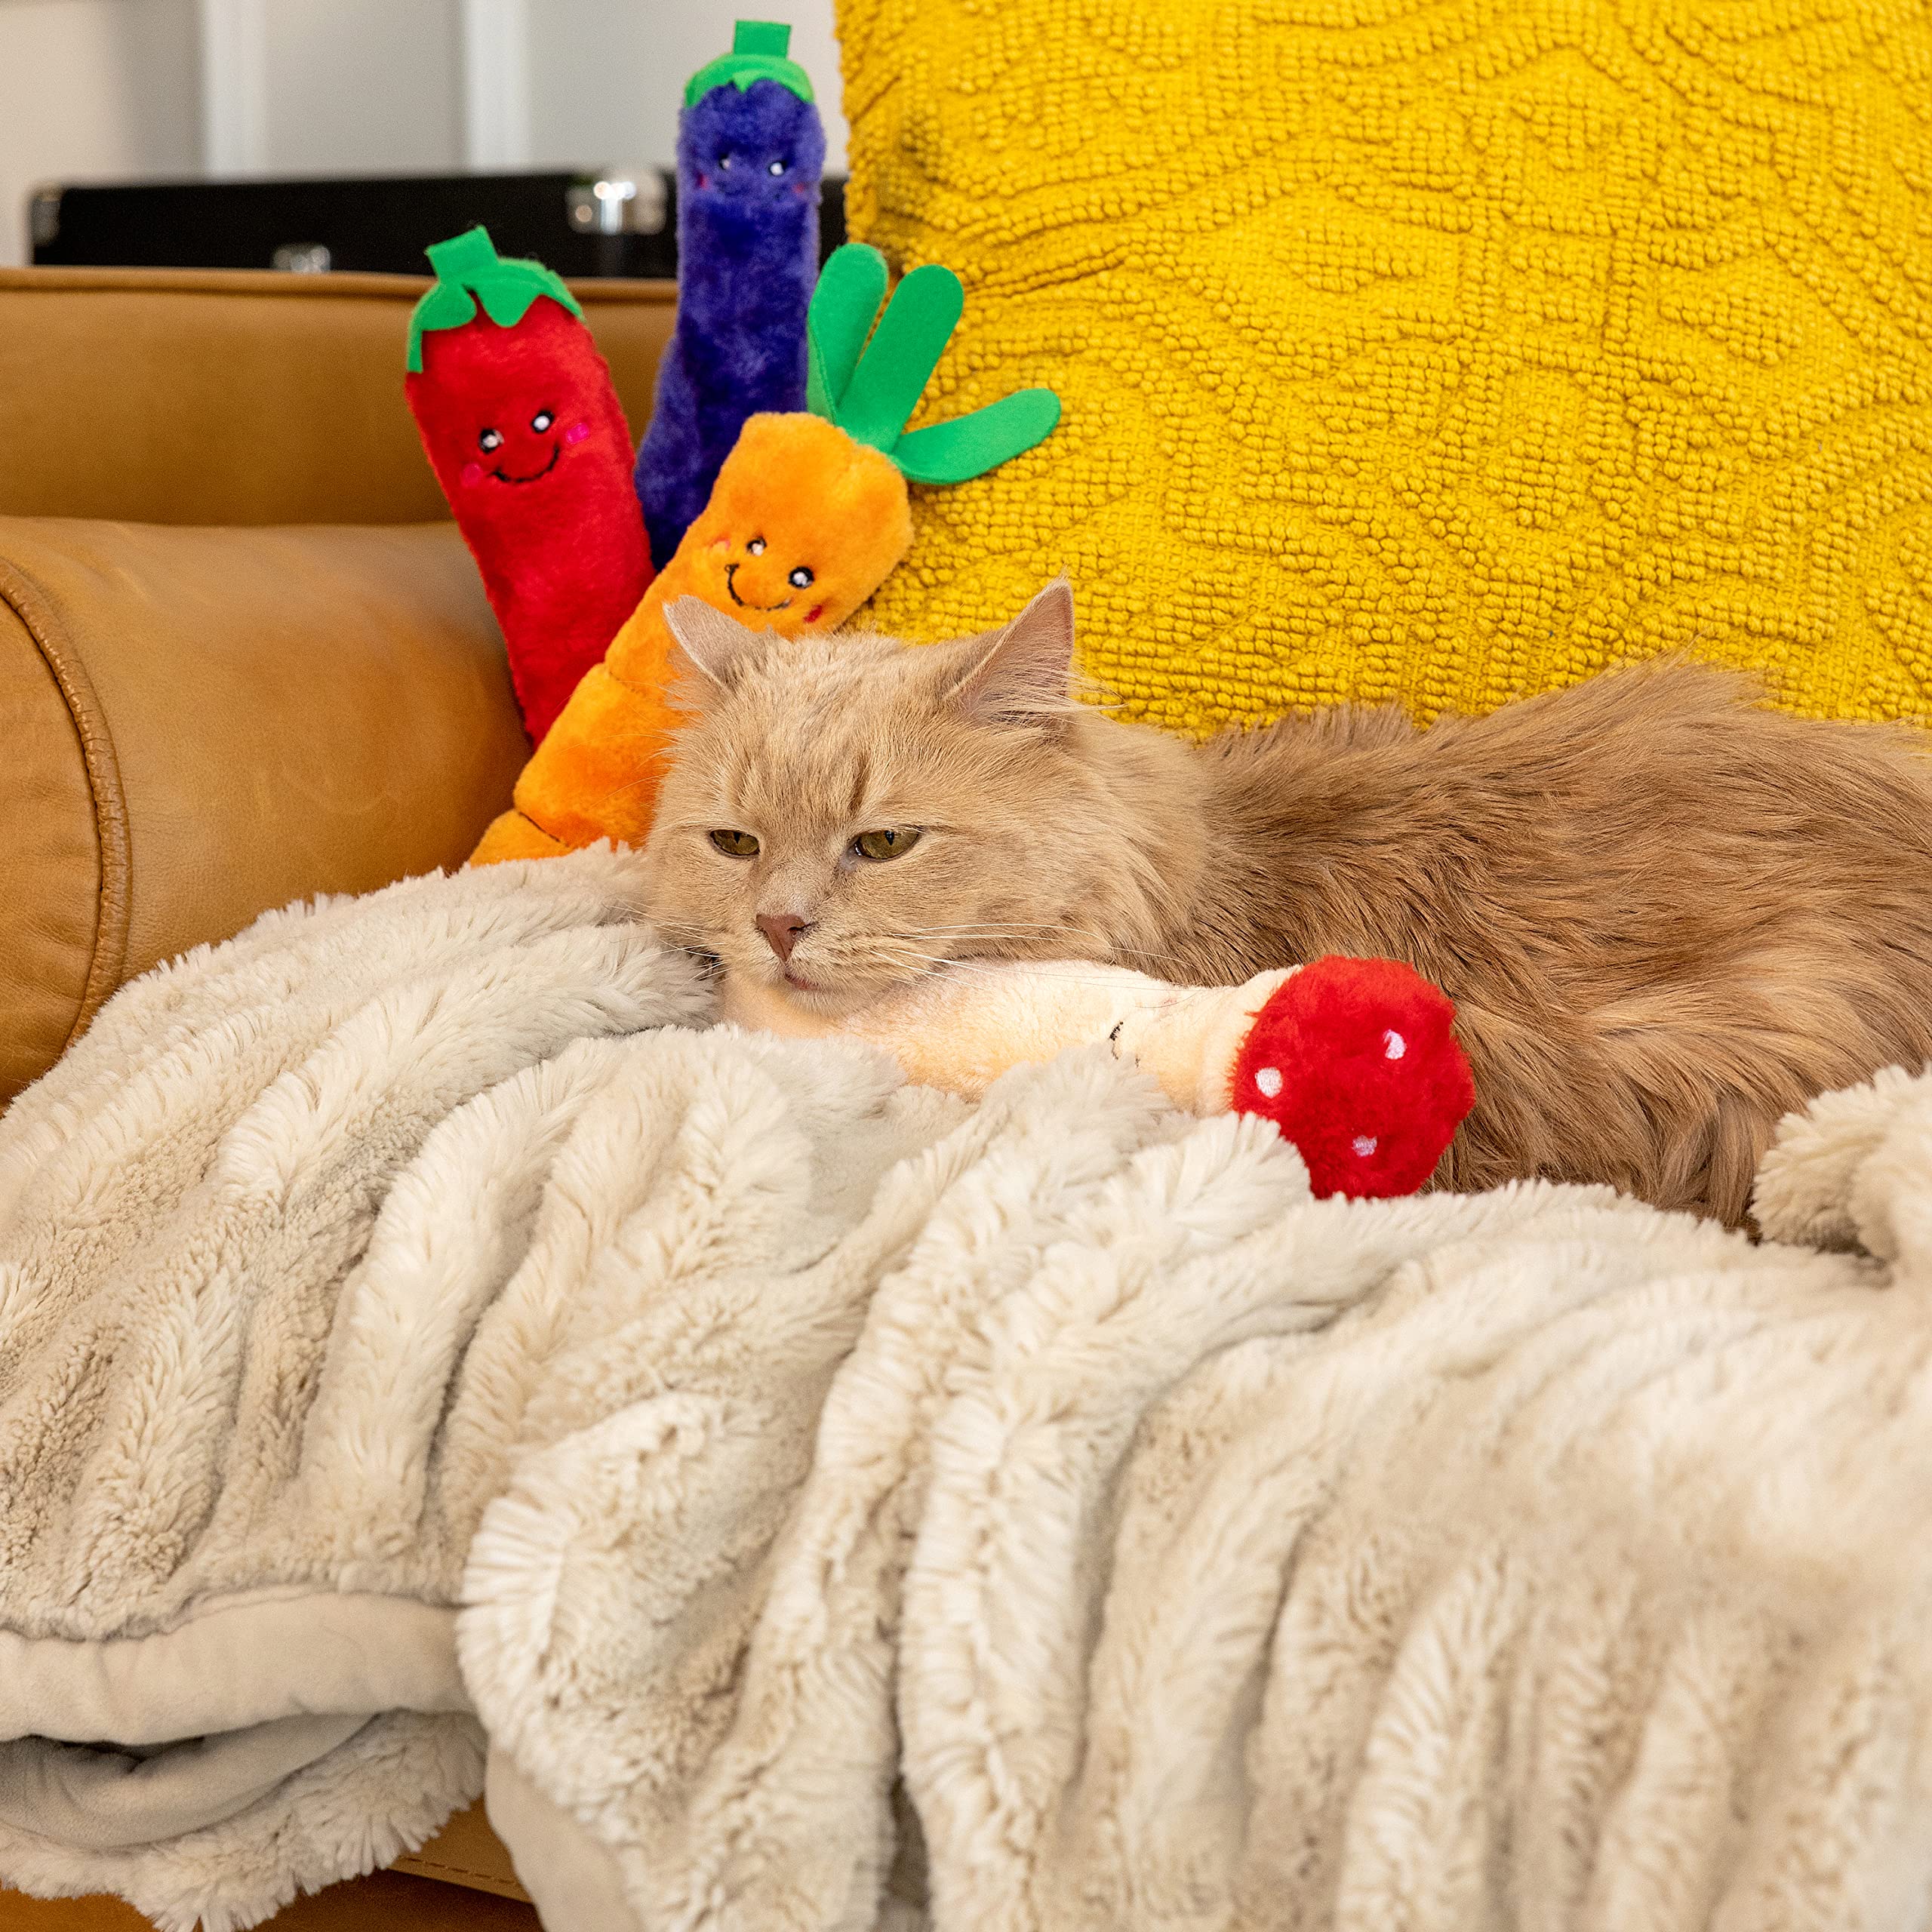 Zippy Paws Kickerz Carrot Plush Catnip Cat Toy - Small  